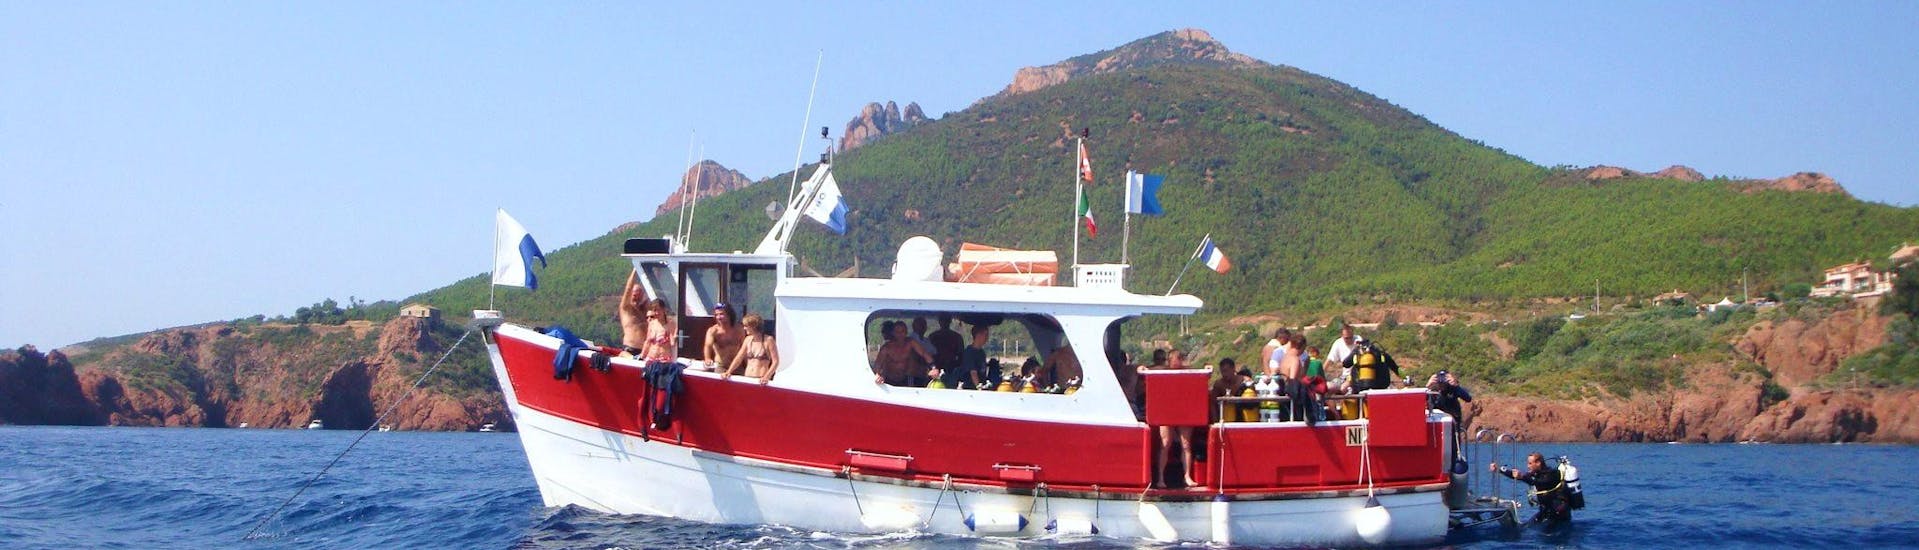 Notre bateau pendant l'excursion de plongée en apnée près de Cannes avec le Centre de plongée La Rague.